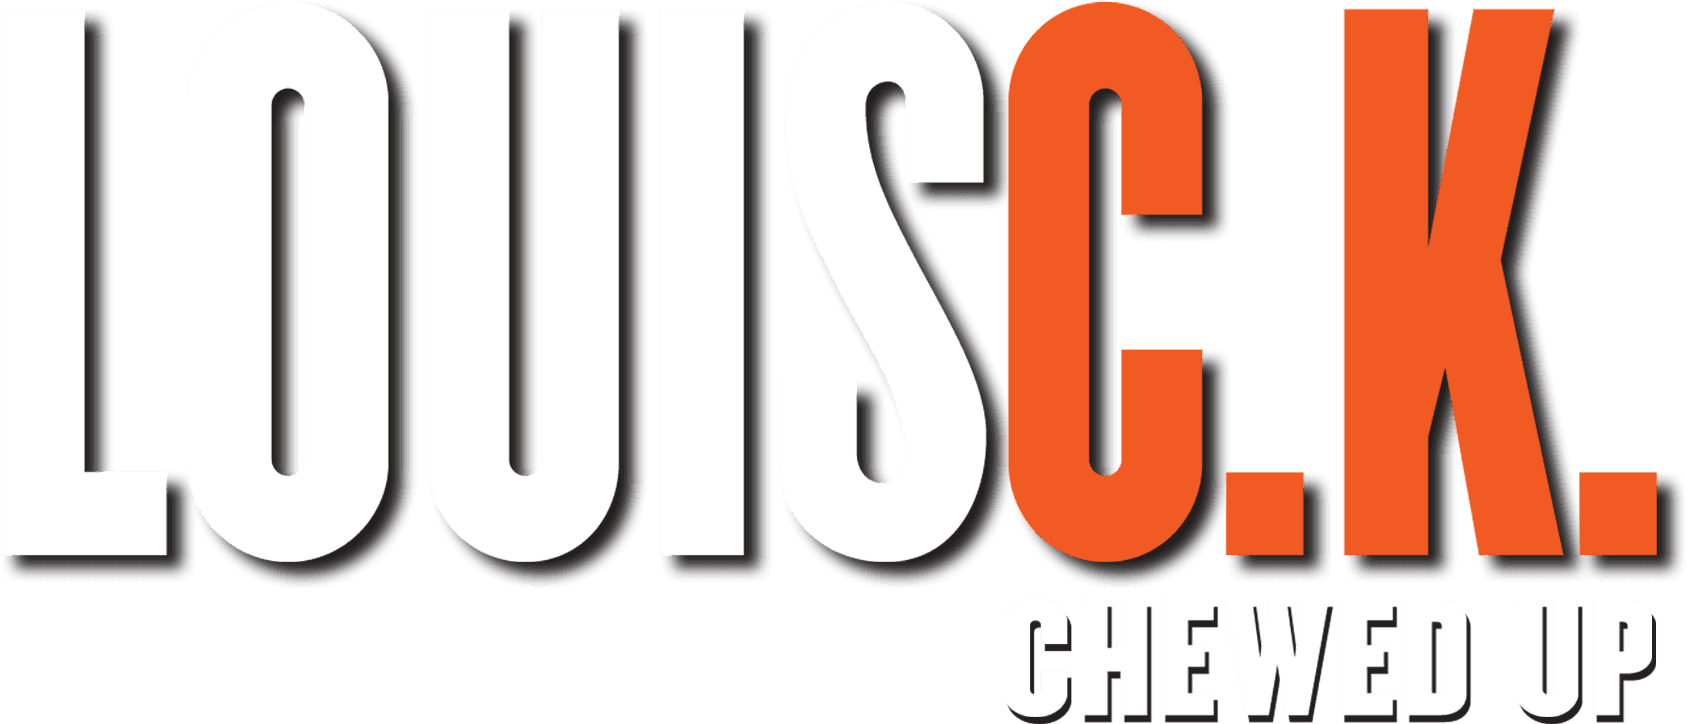 Louis C.K.: Chewed Up logo